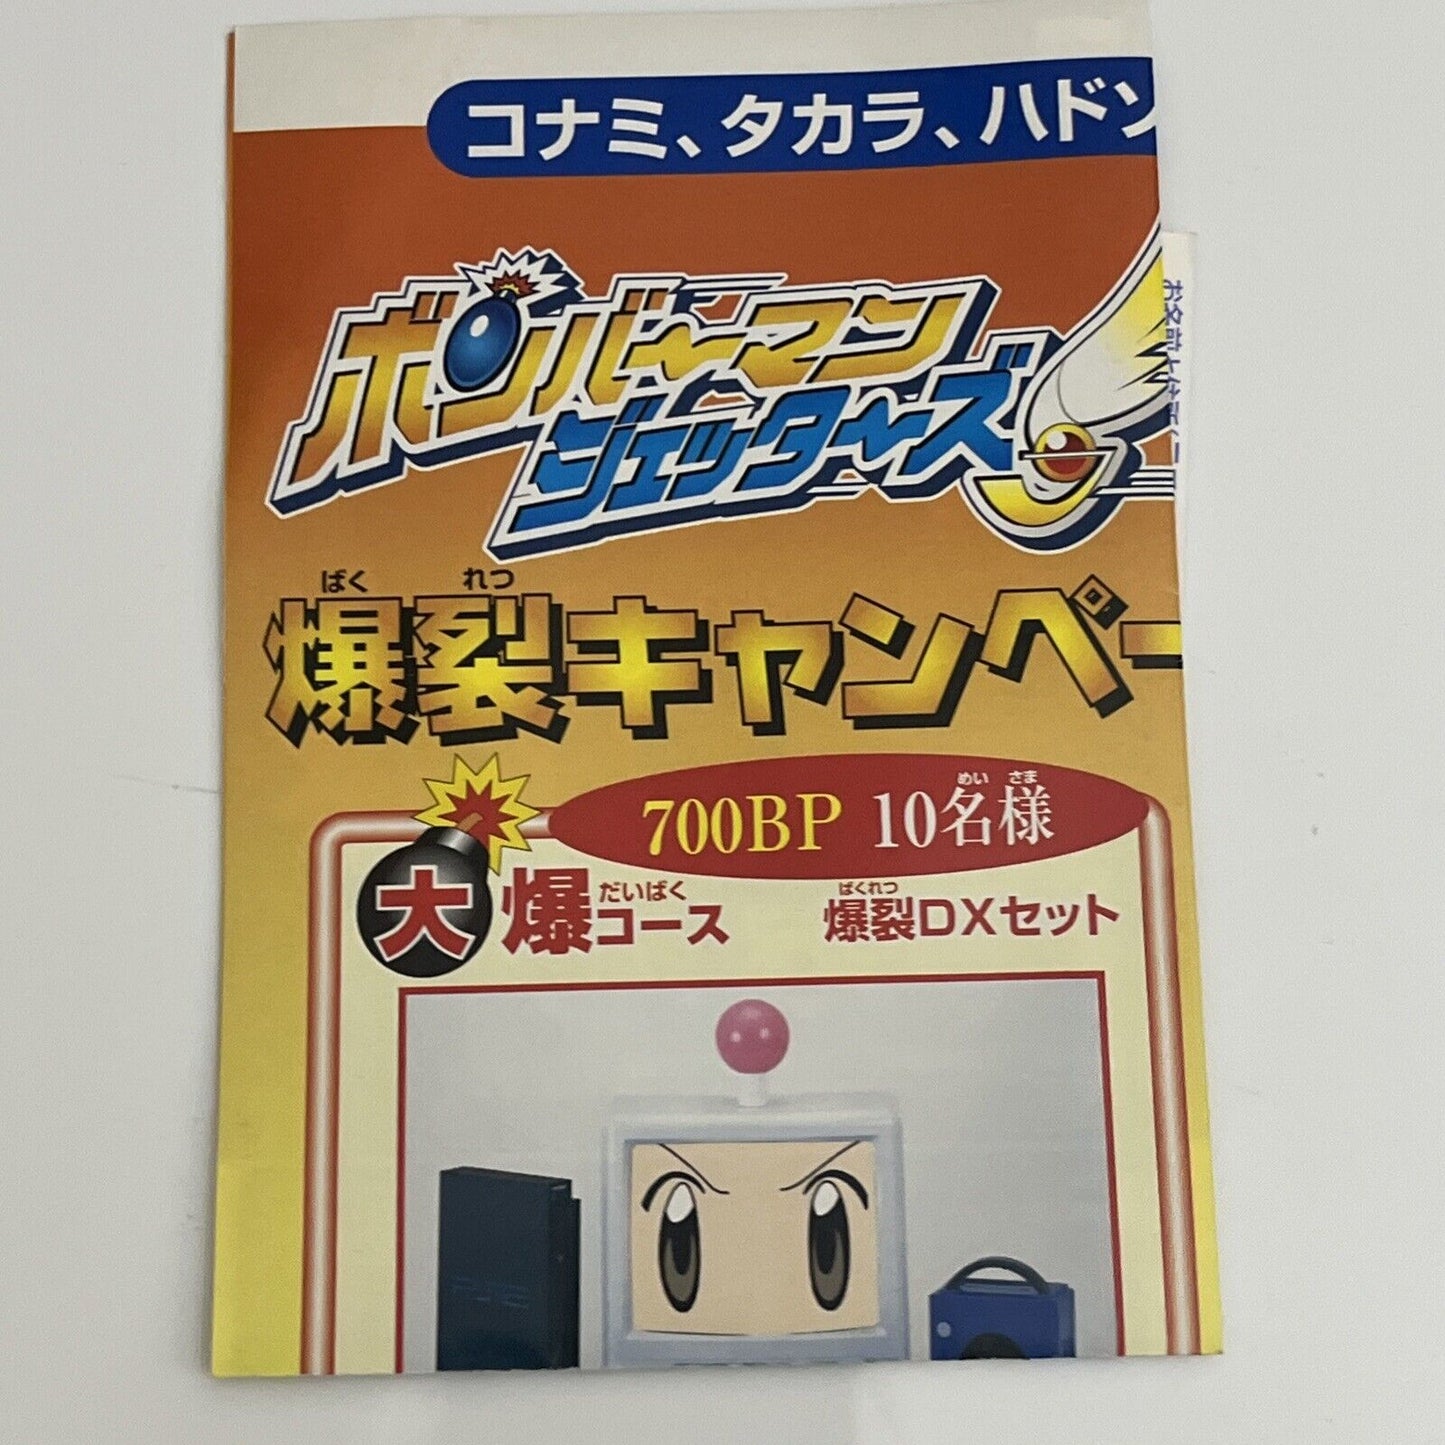 Bomberman Jetters - Nintendo GameCube NTSC-J JAPAN GC Game *No Cover